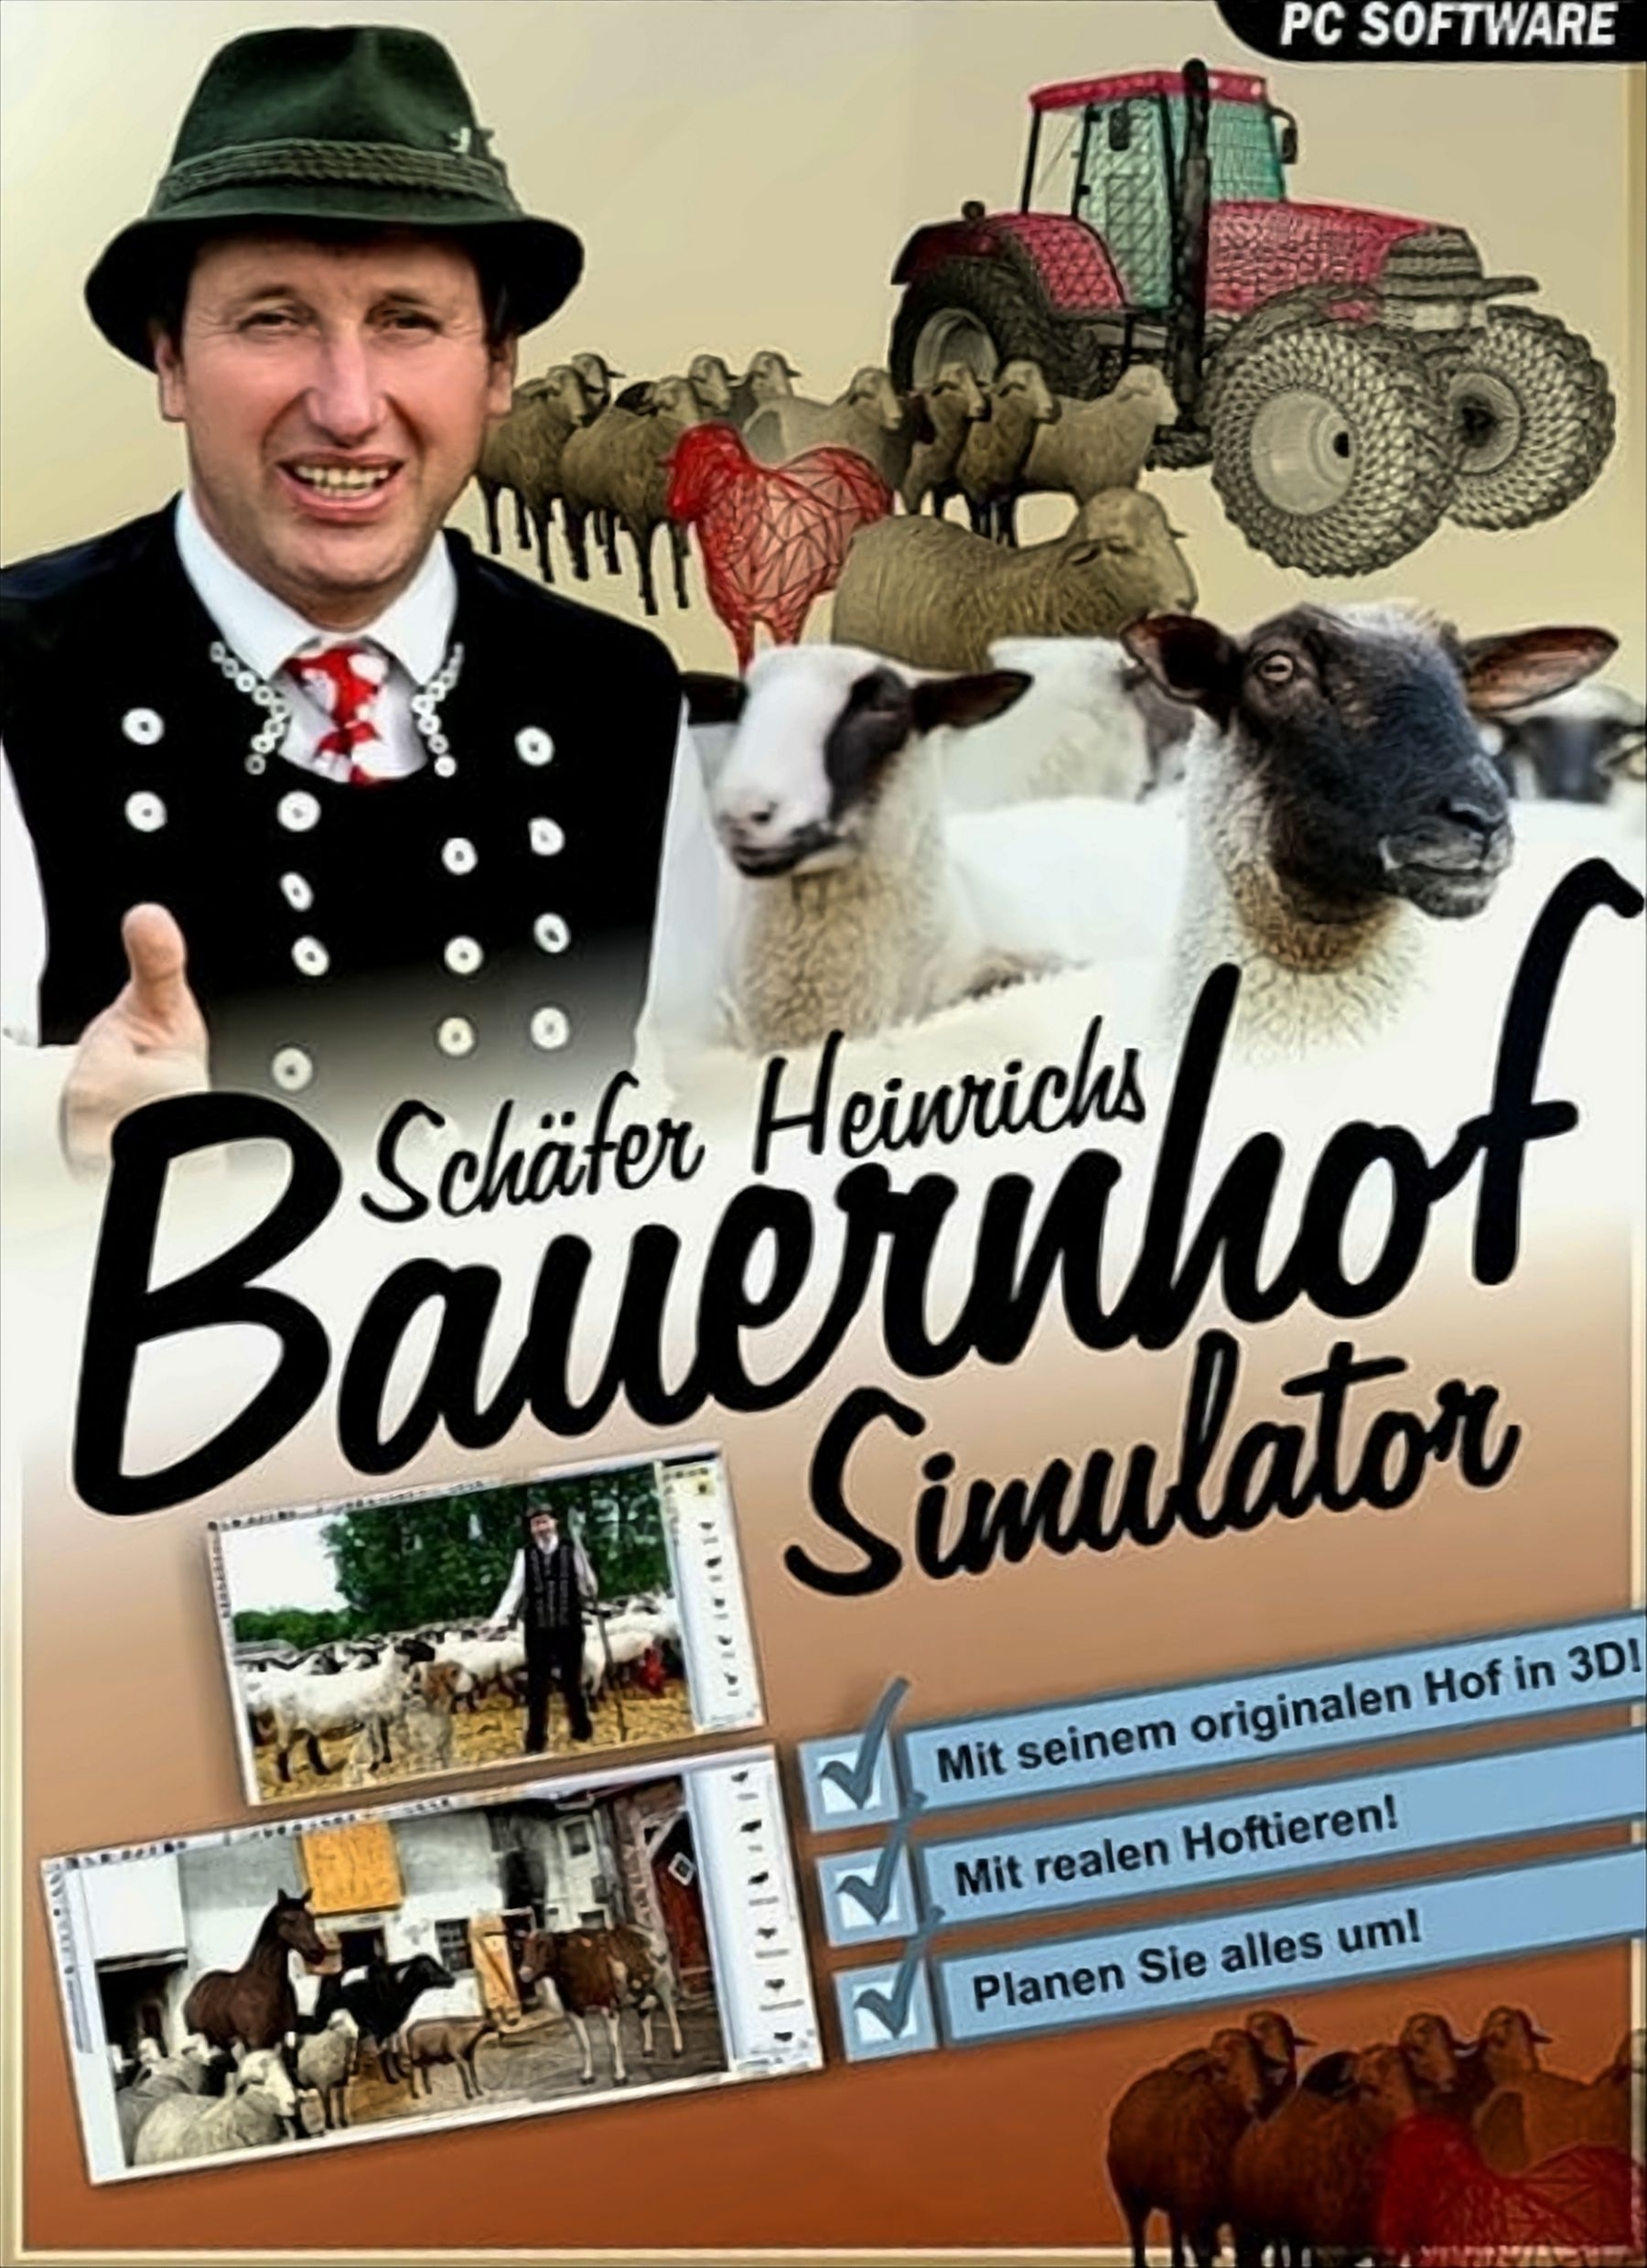 [PC] Schäfer Bauernhof Simulator Heinrichs -